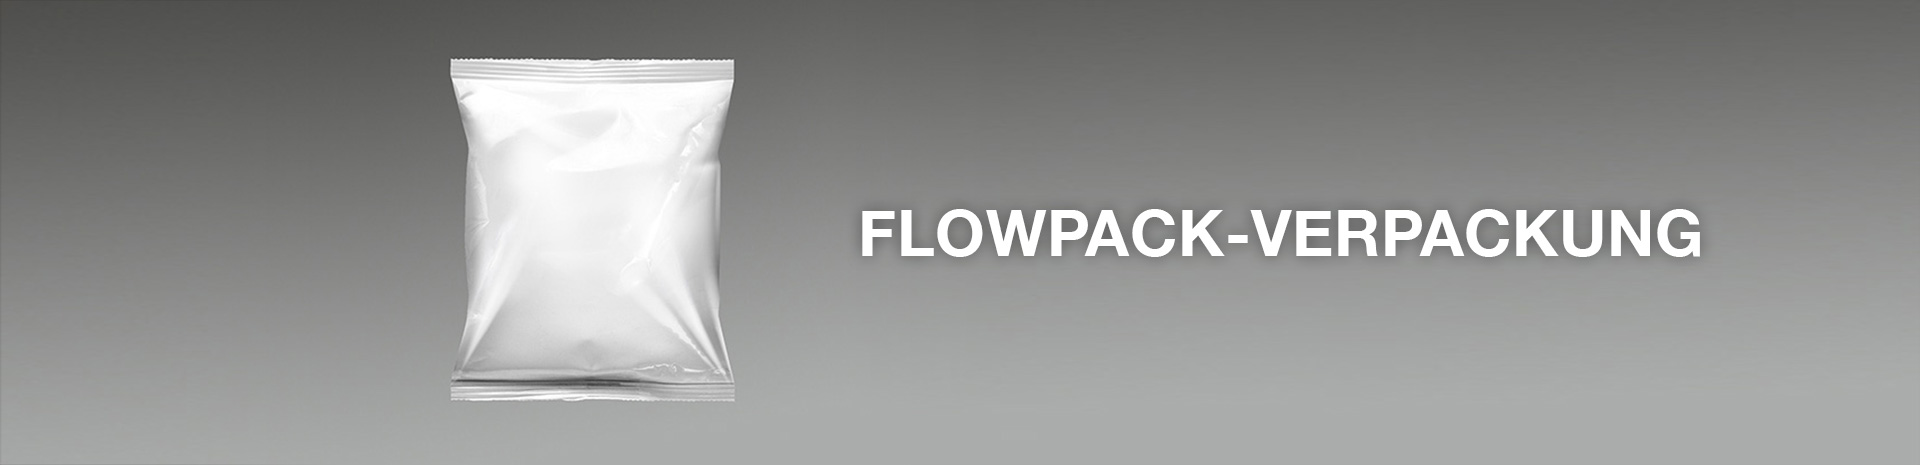 Flowpack-Verpackung